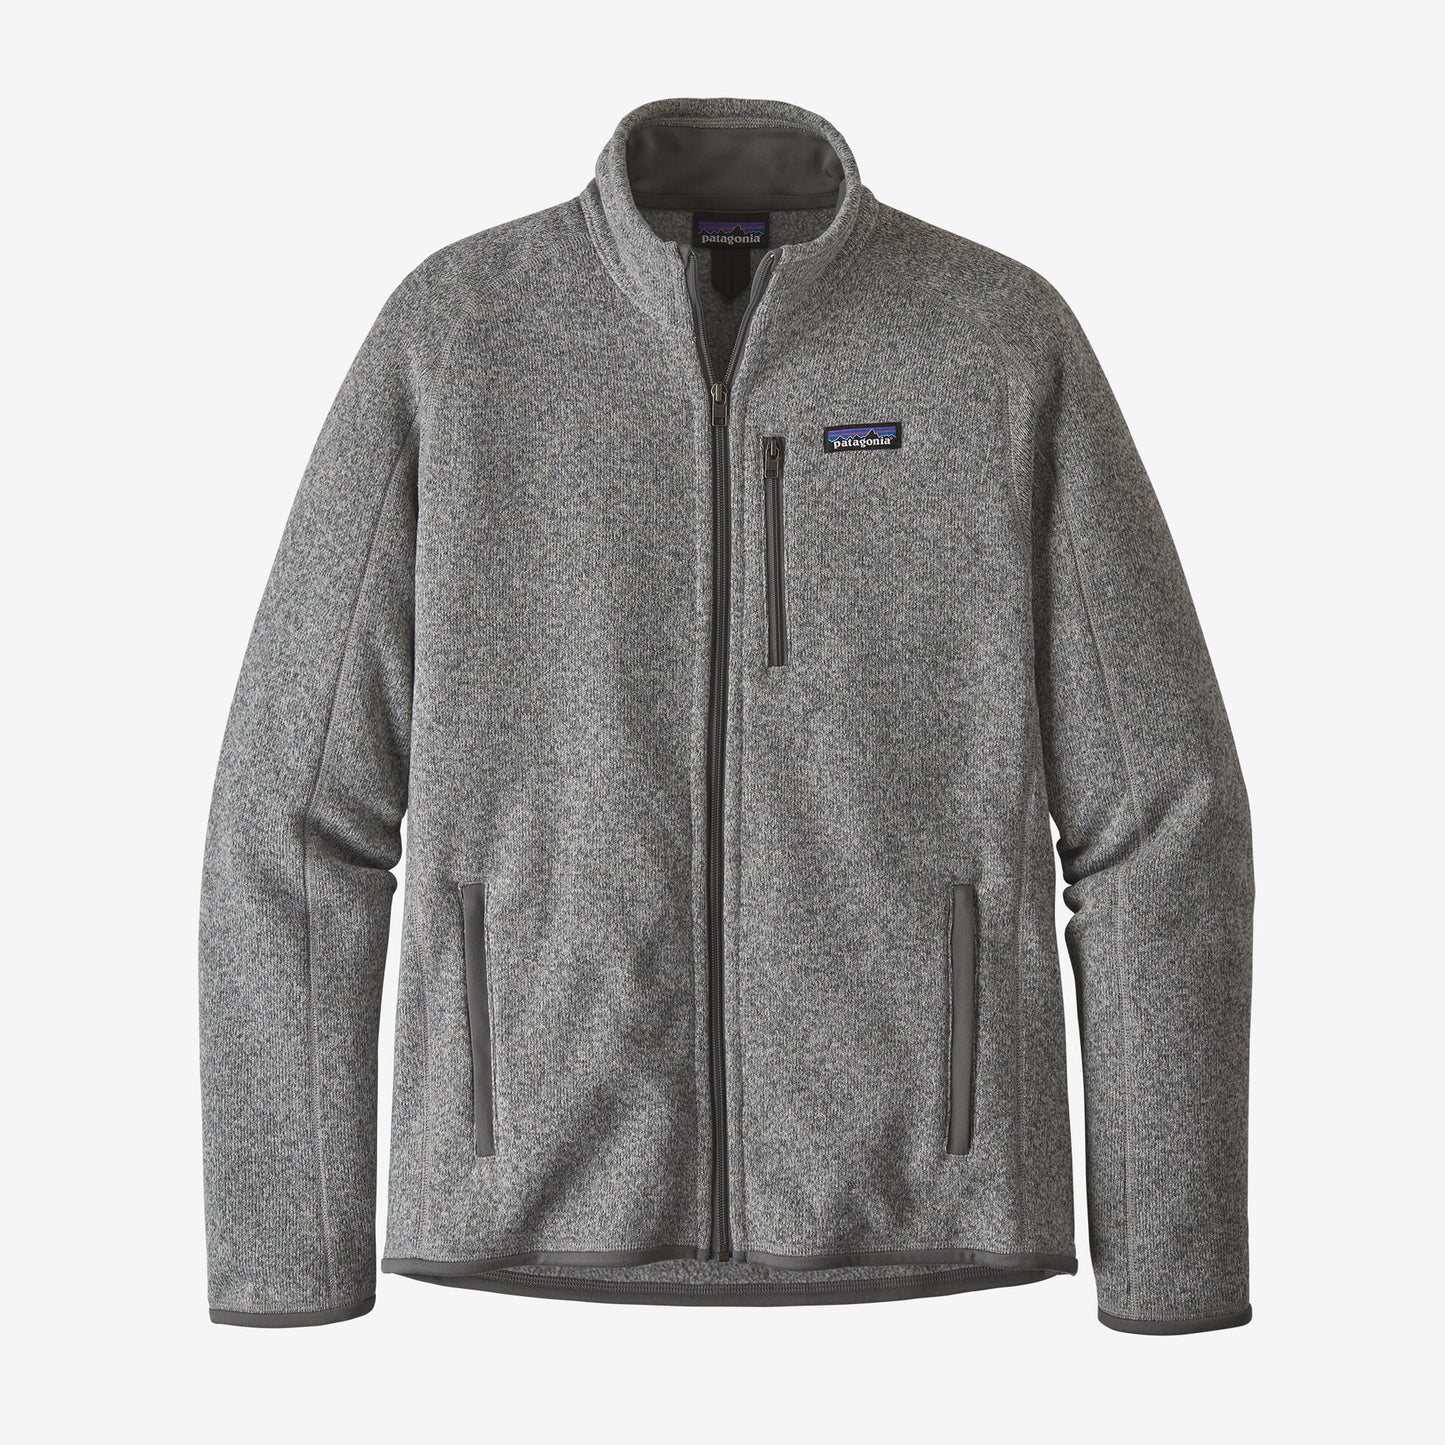 Patagonia - Men's Better Sweater Jacket